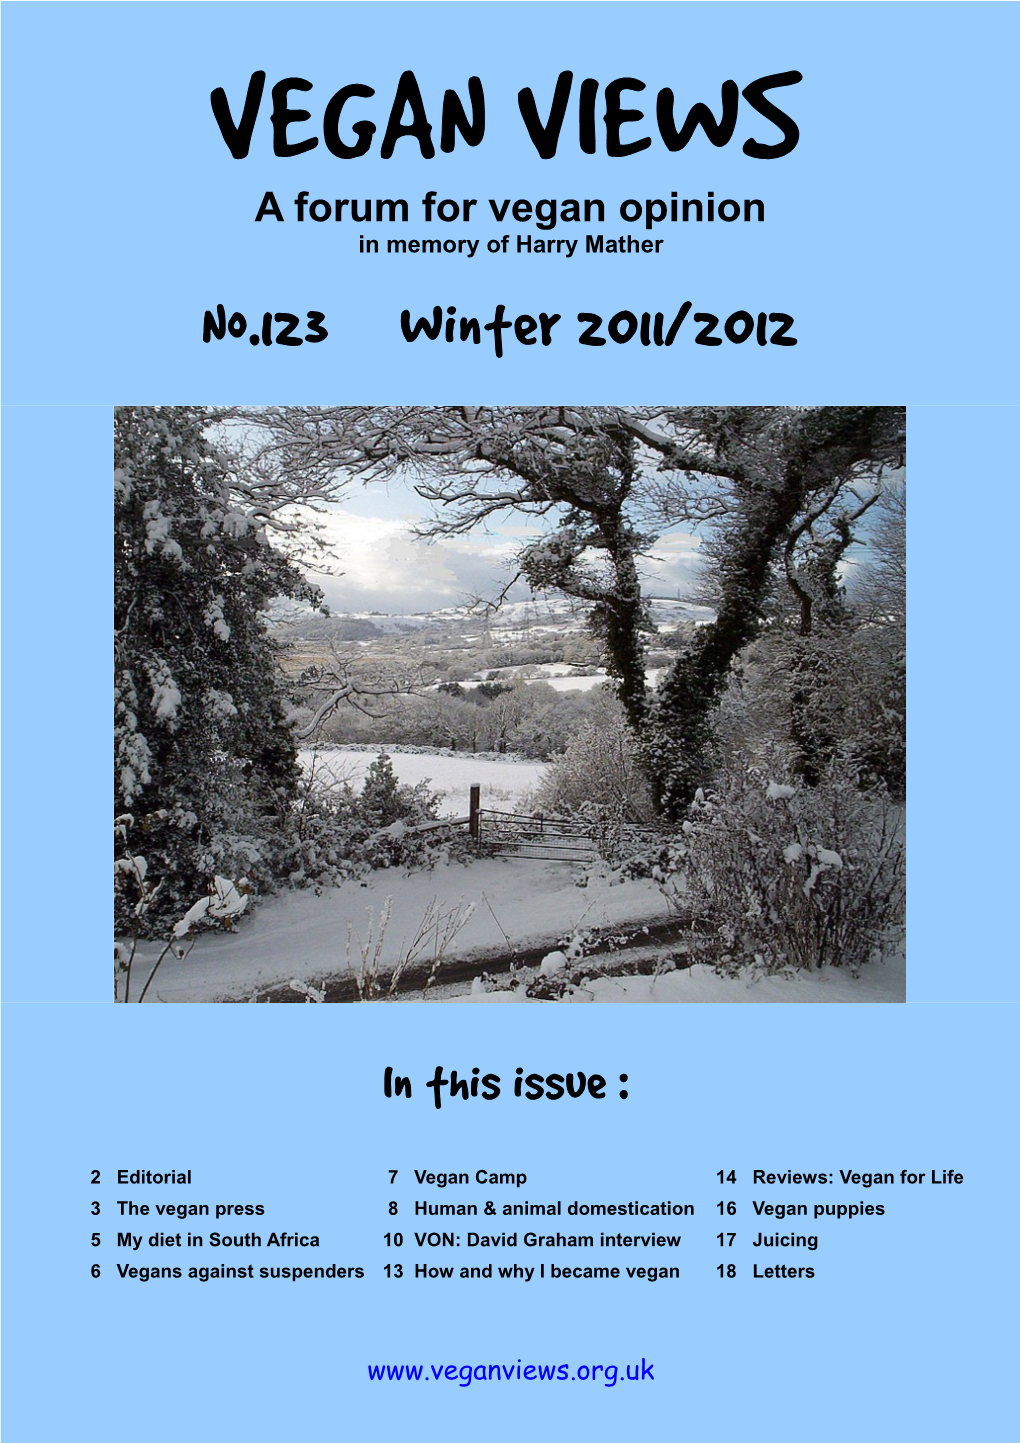 No.123 Winter 2011/2012